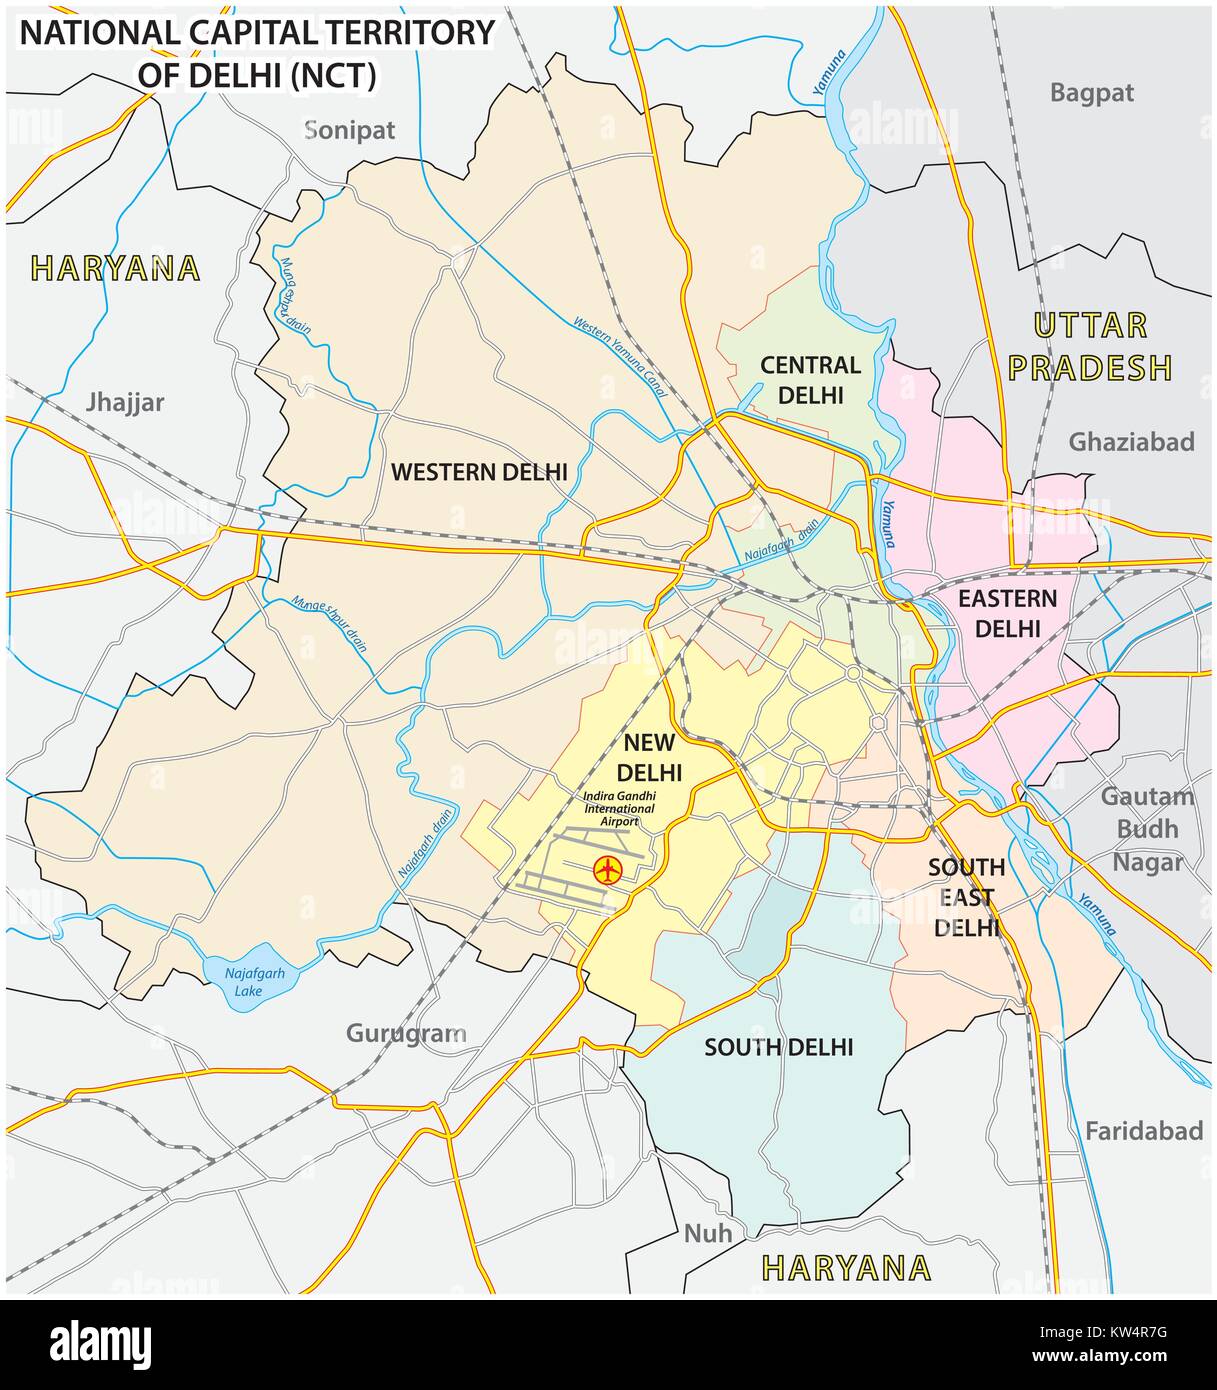 Amministrativo, politico e street mappa del territorio nazionale della Capitale di Delhi (NCT) Illustrazione Vettoriale